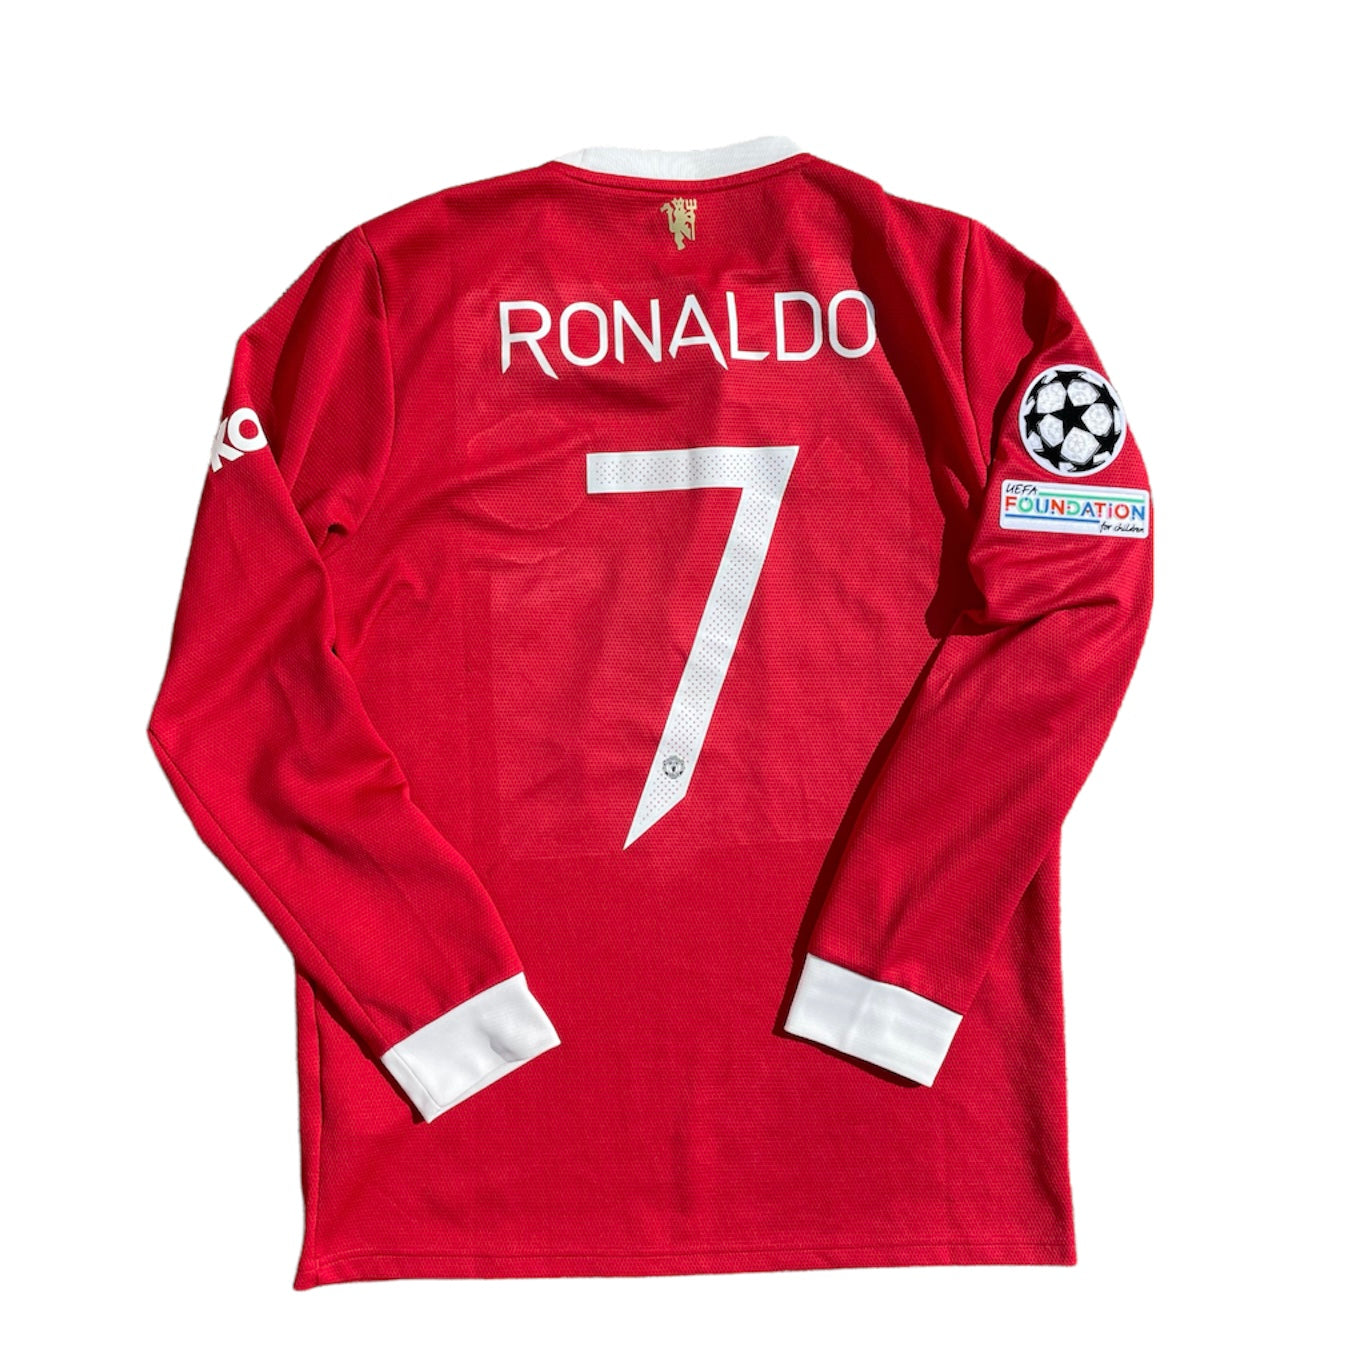 ronaldo jersey original